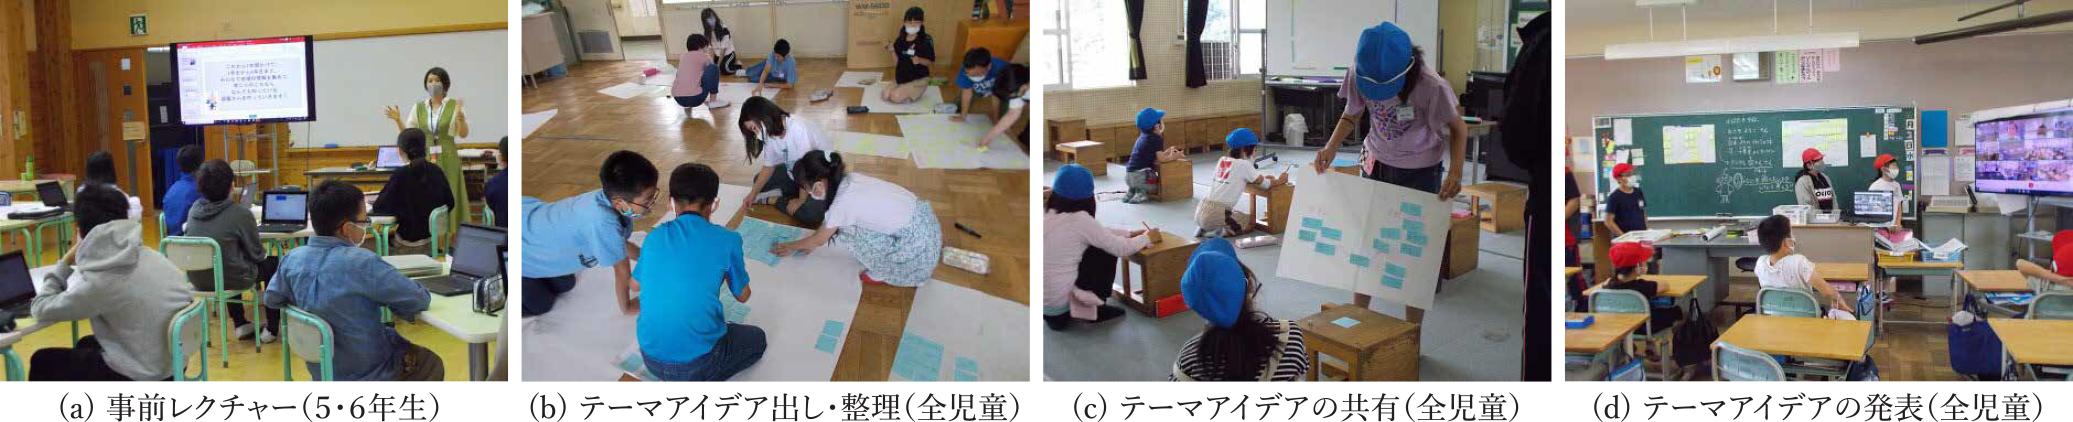 1学期のはばたきタイム実施の様子　Photos of activity of “Habataki-Time” at 1st semester.